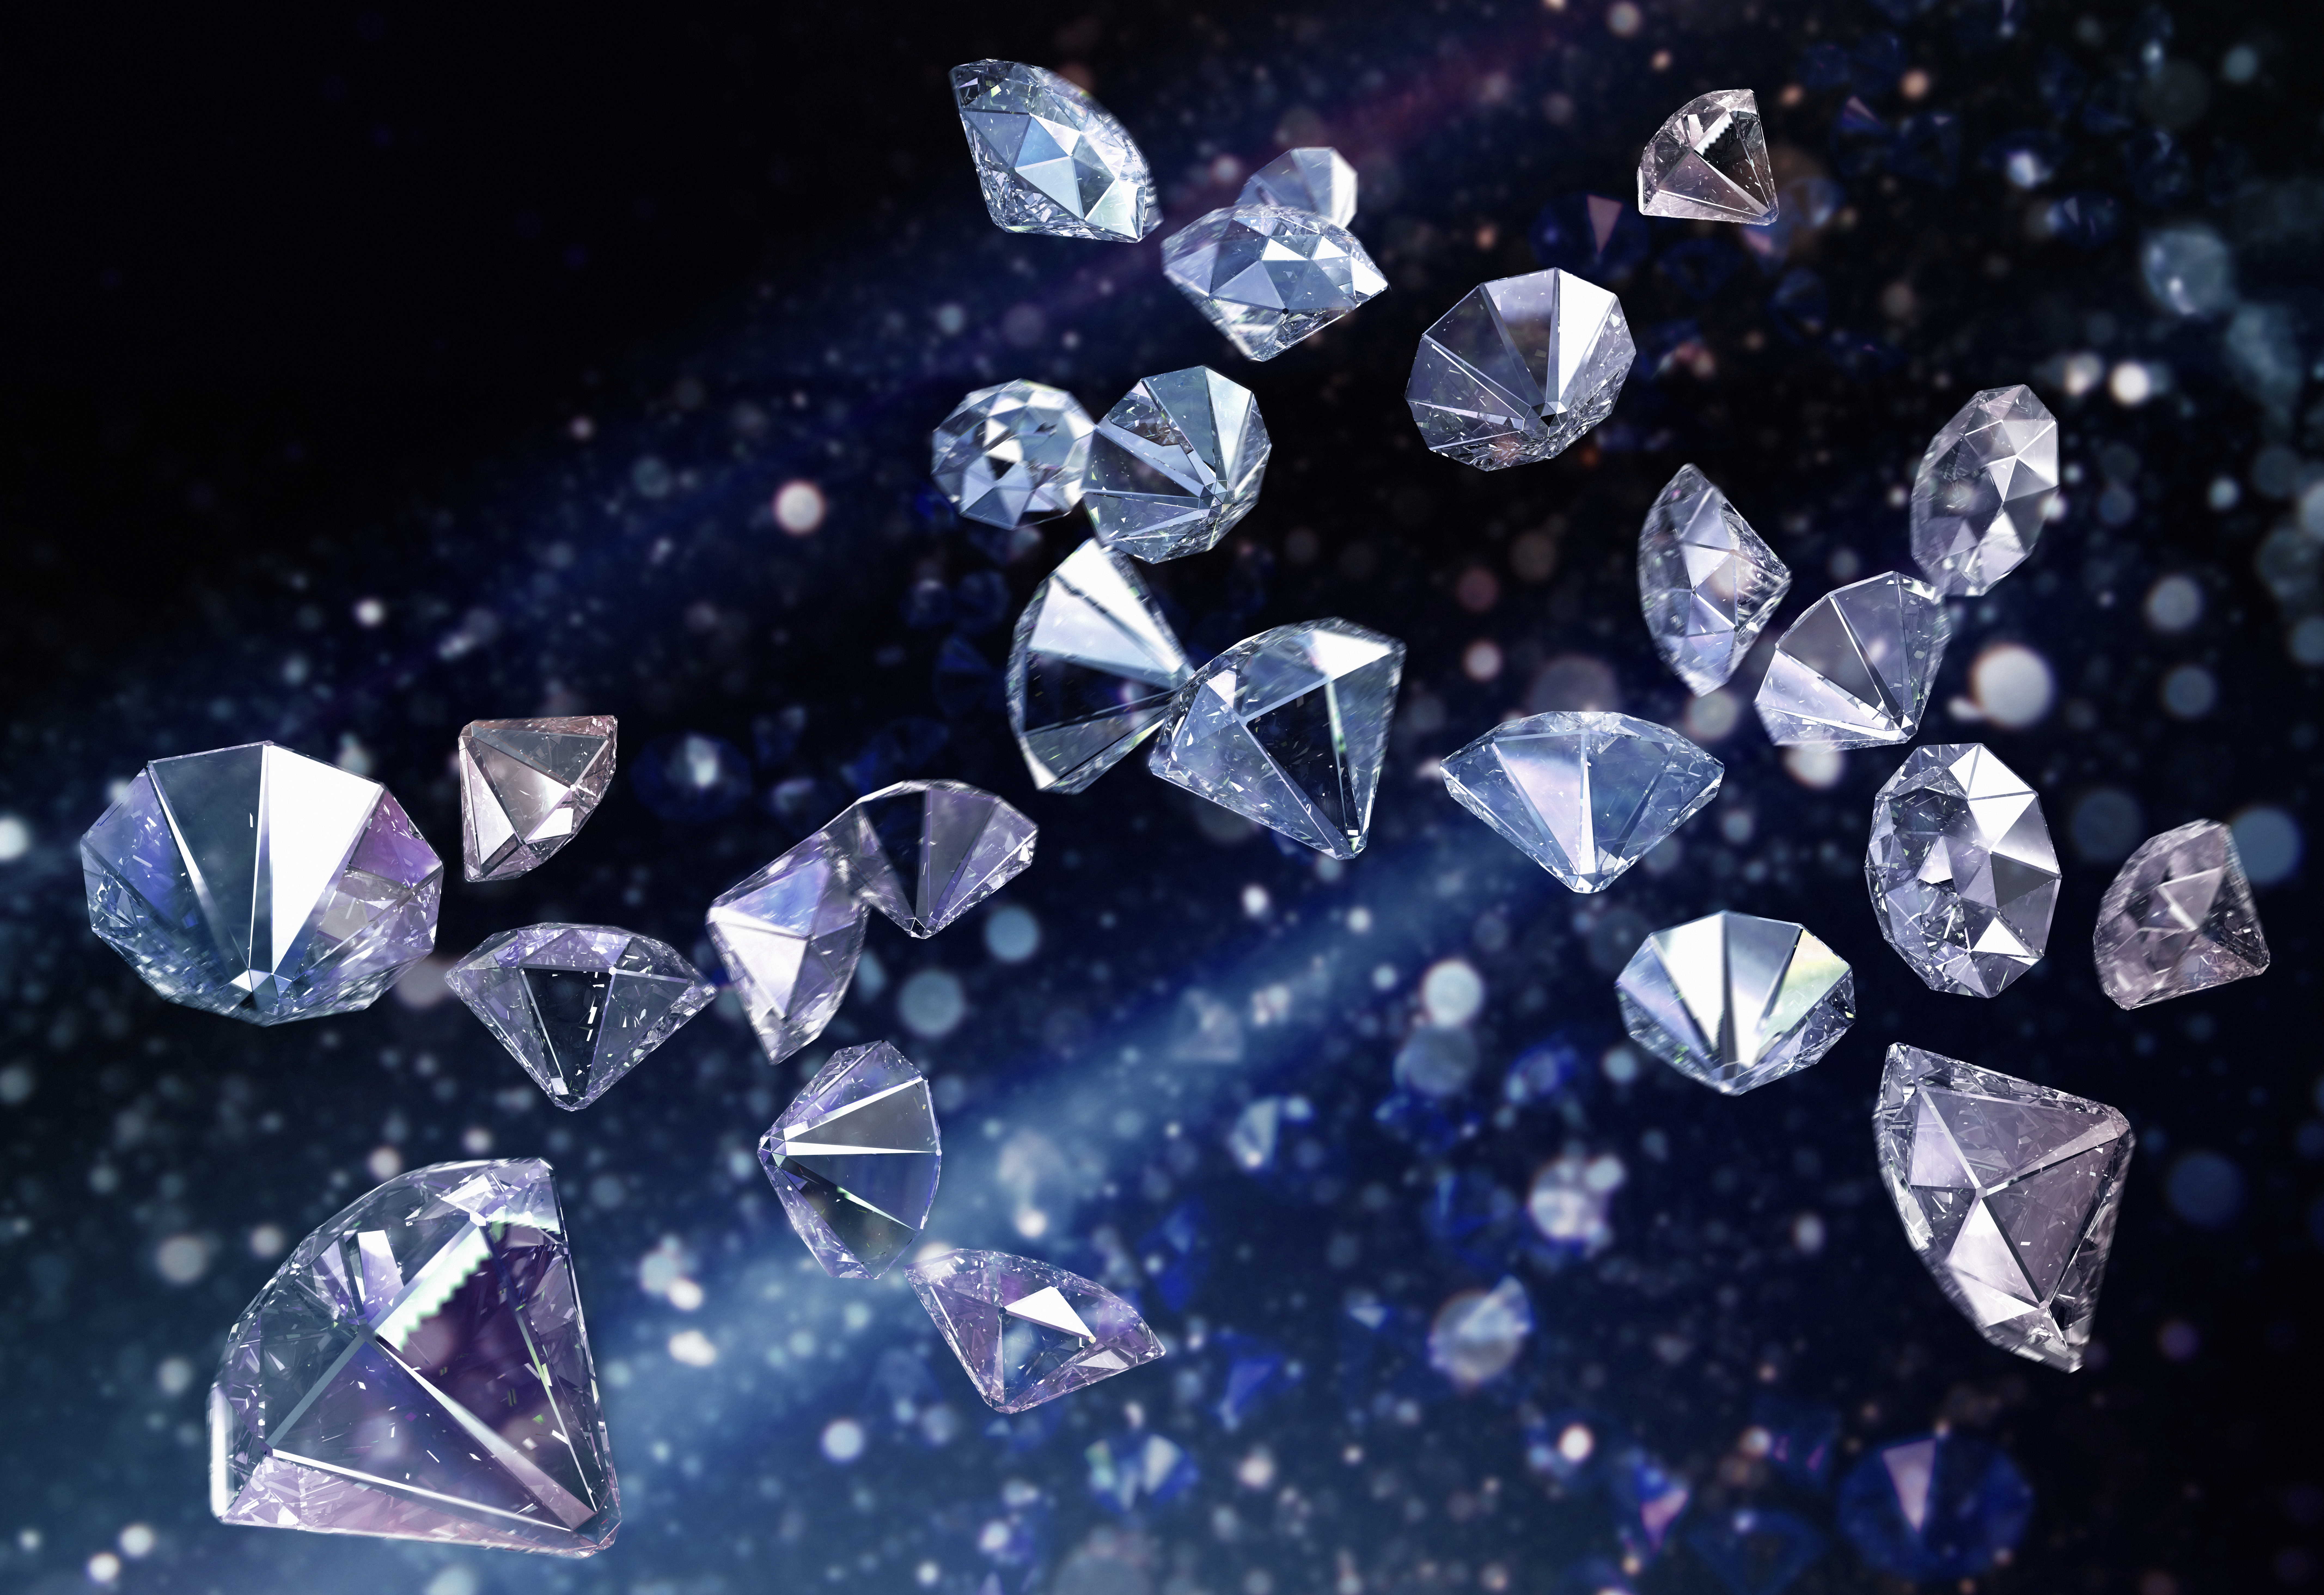 Die Forscher arbeiten daran, ihr neues Diamantherstellungsverfahren weiter zu verbessern, damit es auf großen Oberflächen funktioniert